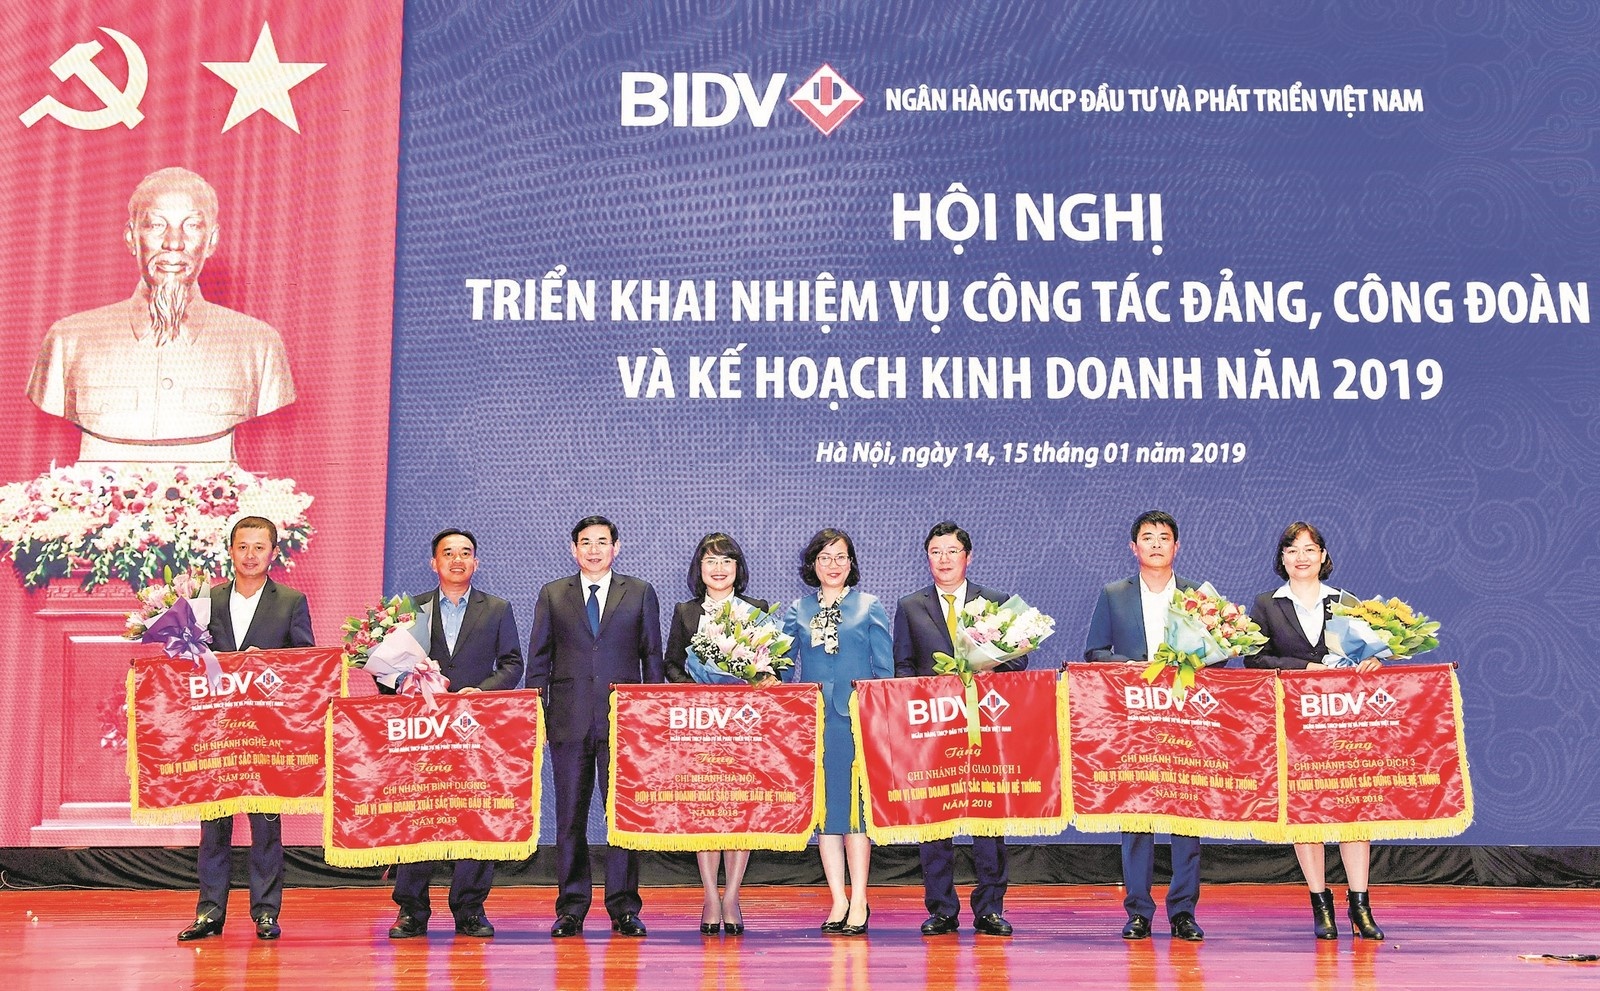 BIDV Hà Nội: Đơn vị của những sáng kiến